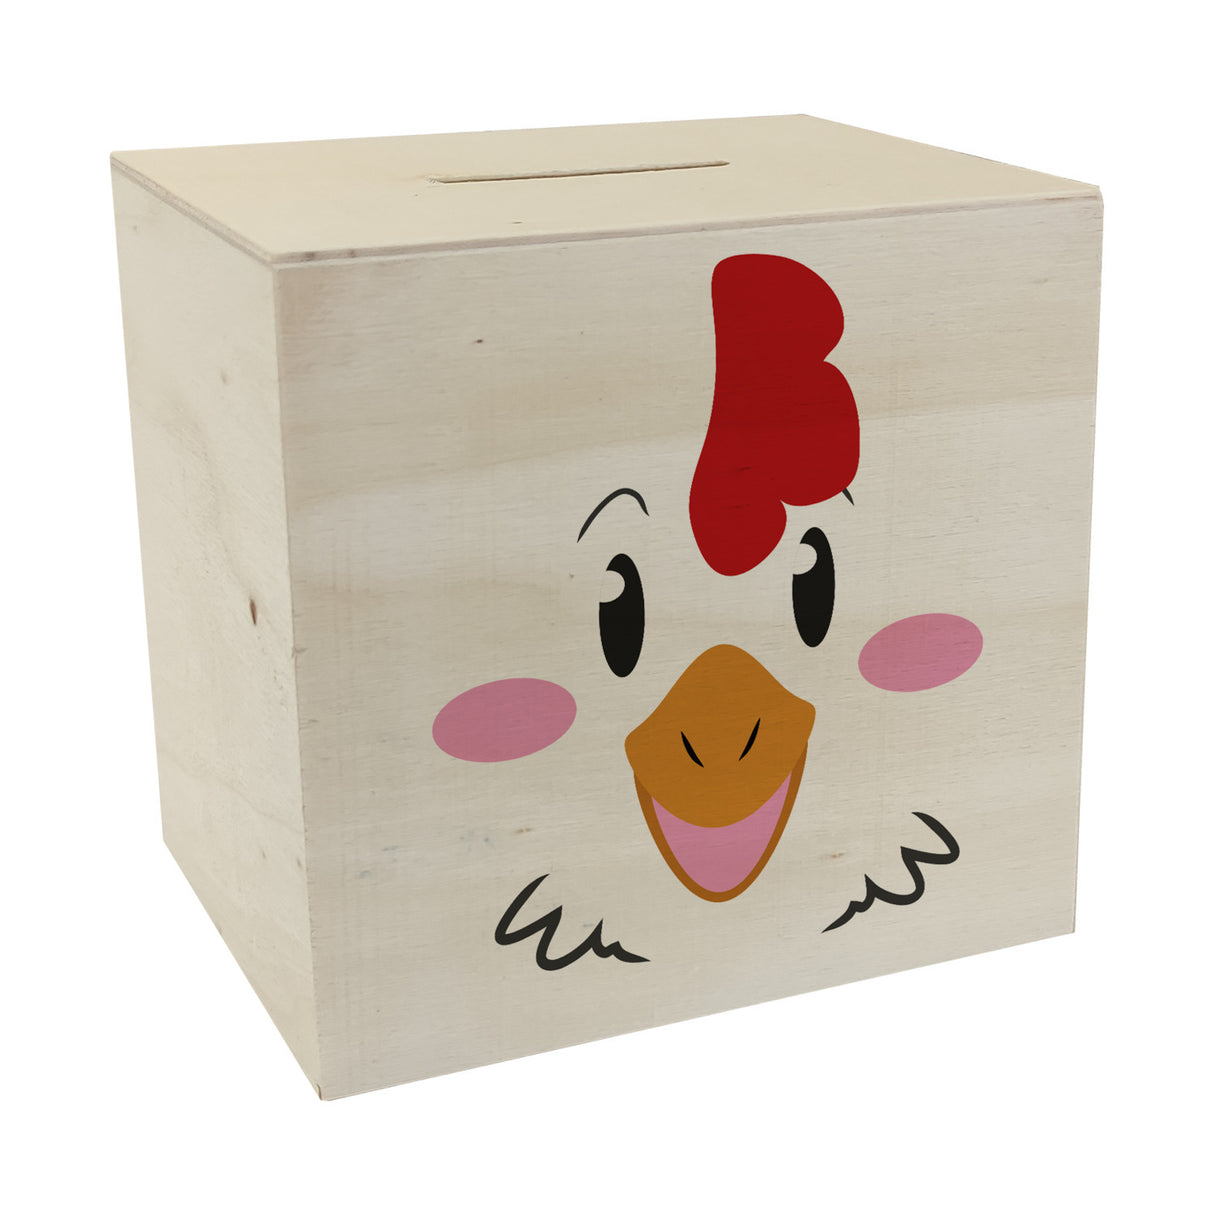 Spardose aus Keramik mit niedlichem Hühner-Gesicht - für kleine Kinder